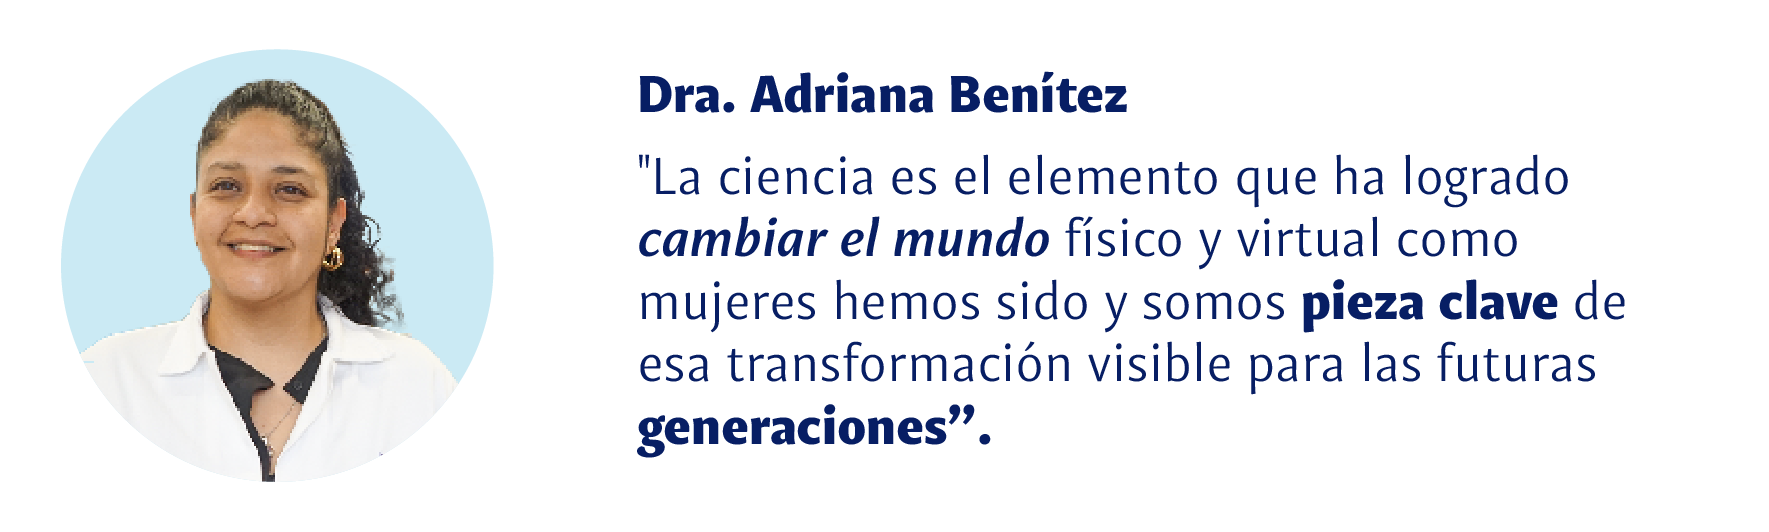 Dra. Adriana Benítez: La ciencia es el elemento que ha logrado cambiar el mundo físico y virtual, como mujeres hemos sido pieza clave de esa transformación visible para las futuras generaciones.